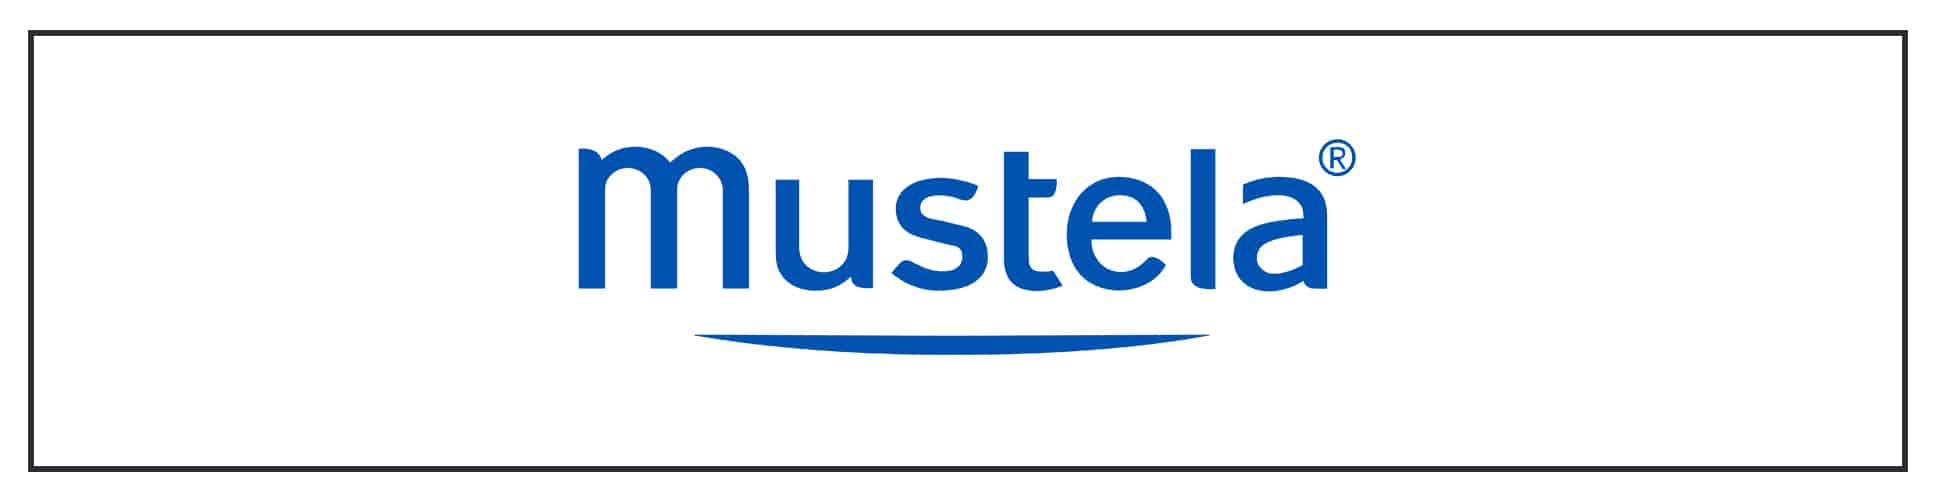 Mustela logo on a white background.